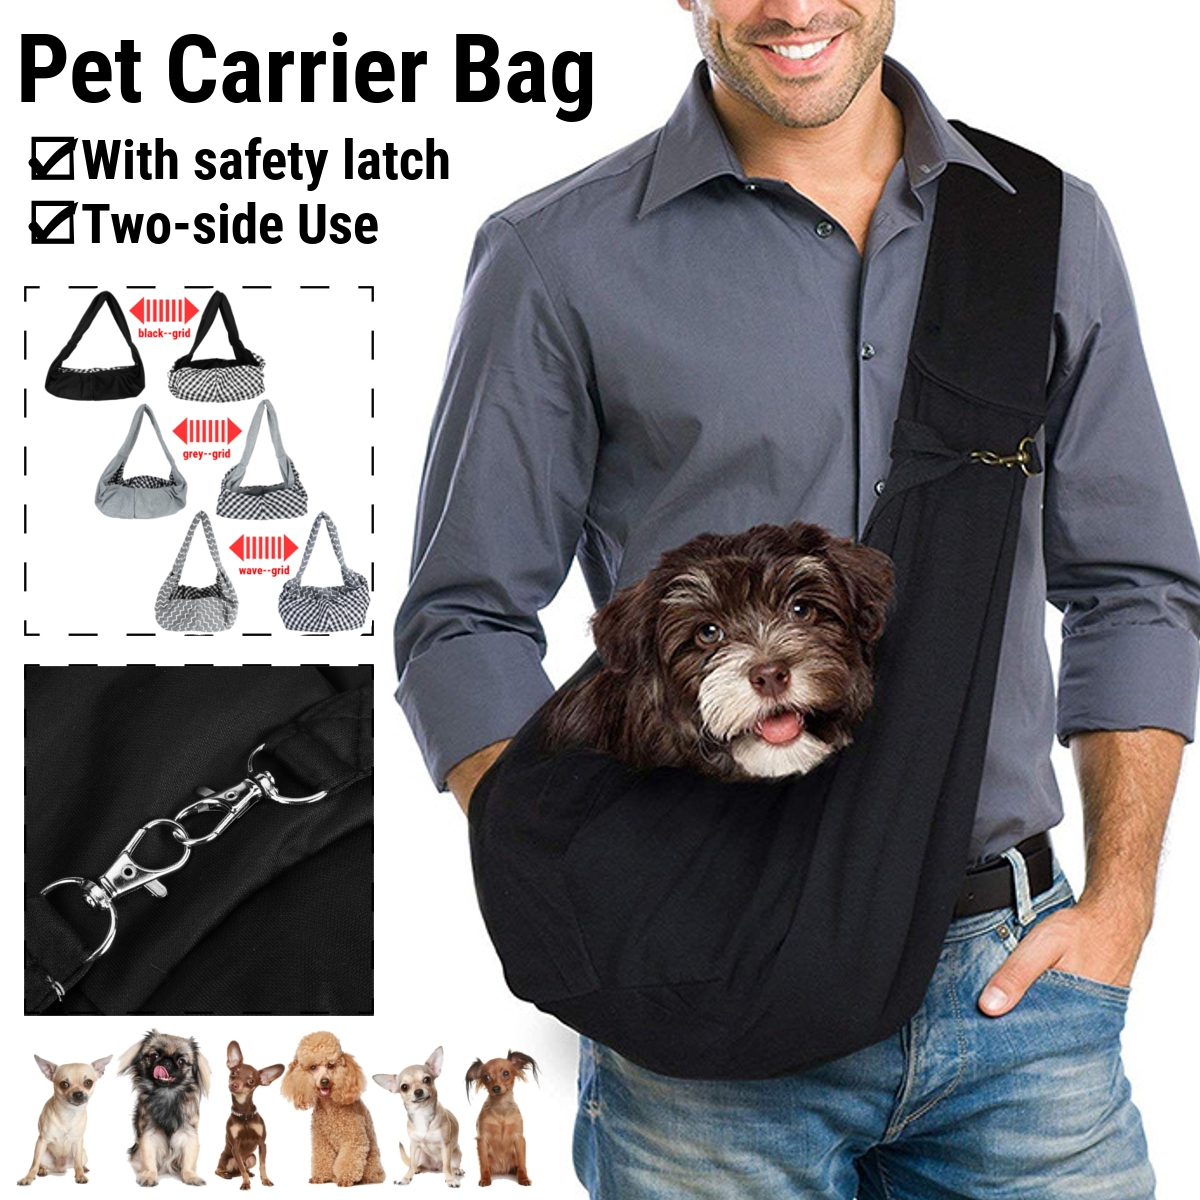 Pet-Carrier-Comfort-Tote-Latch-Shoulder-Travel-Bag-Sling-Backpack-Dog-Cat-Puppy-1904469-6